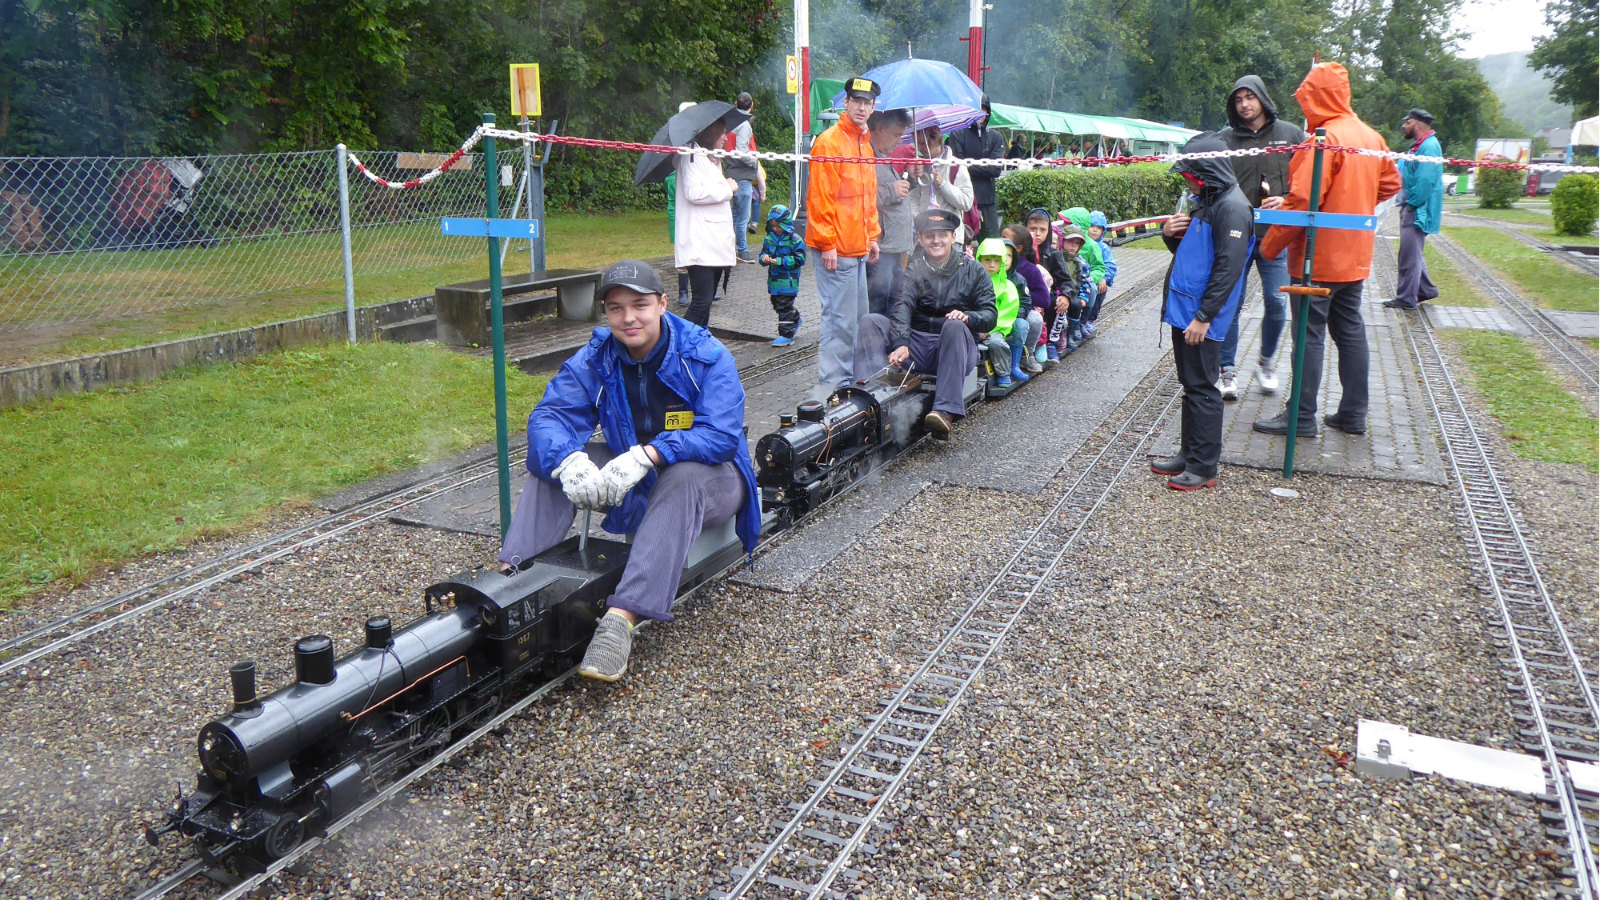 trotz Dauerregen ein Lächeln im Gesicht: Lokomotivführer der Dampflokomotiven